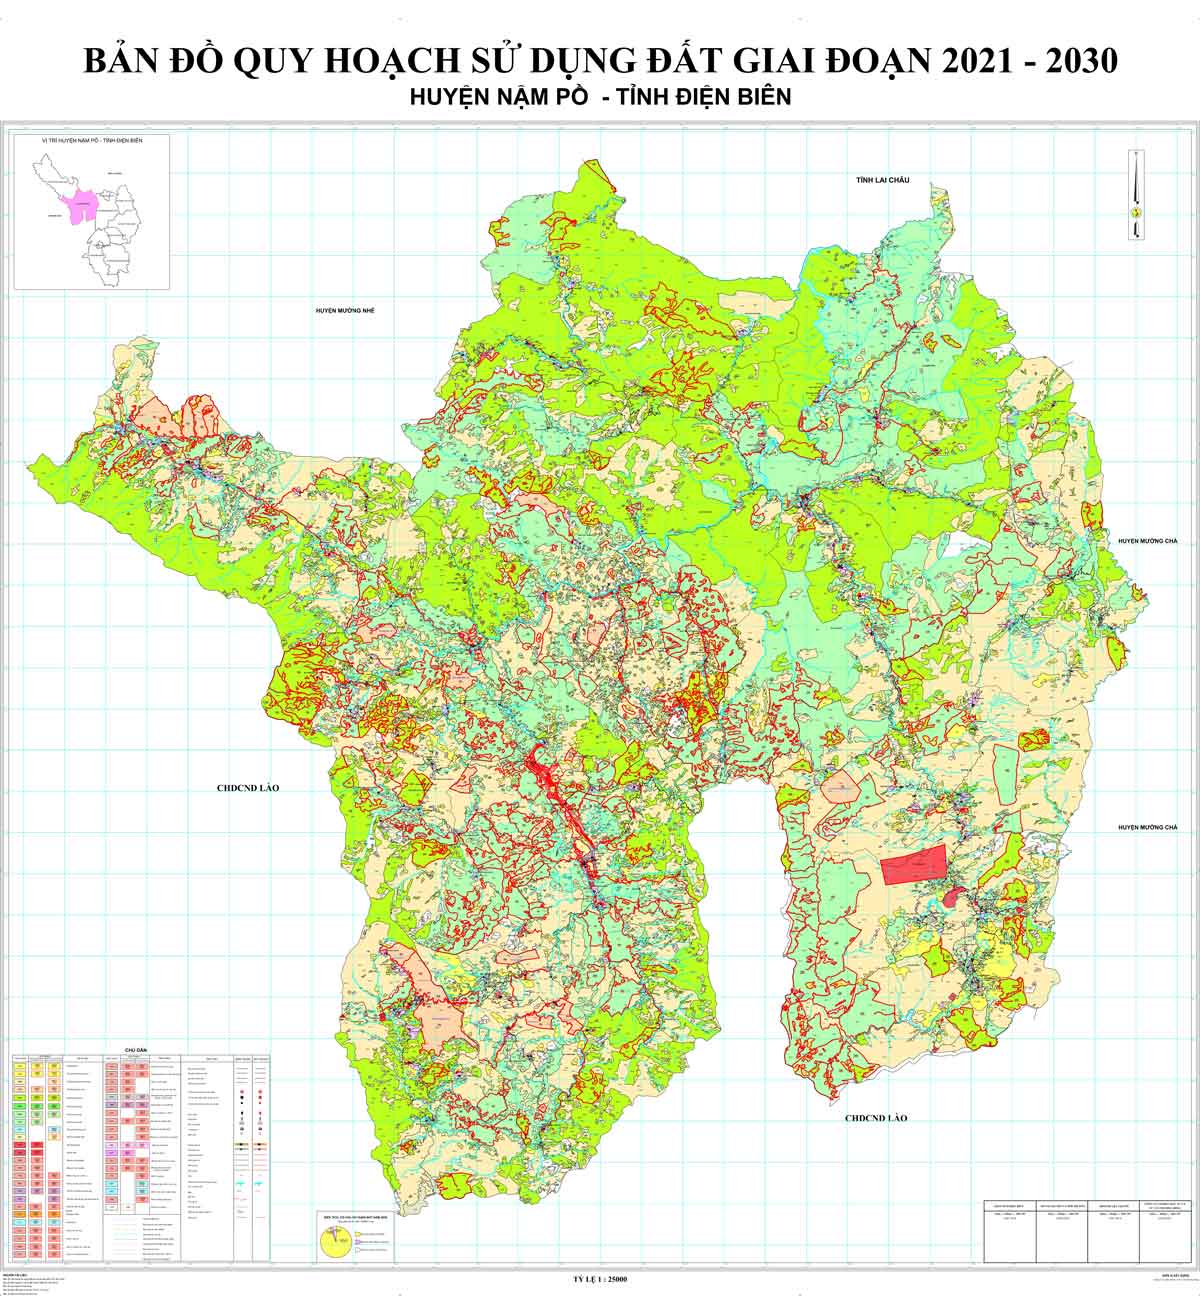 Bản đồ QHSDĐ huyện Nậm Pồ đến năm 2030